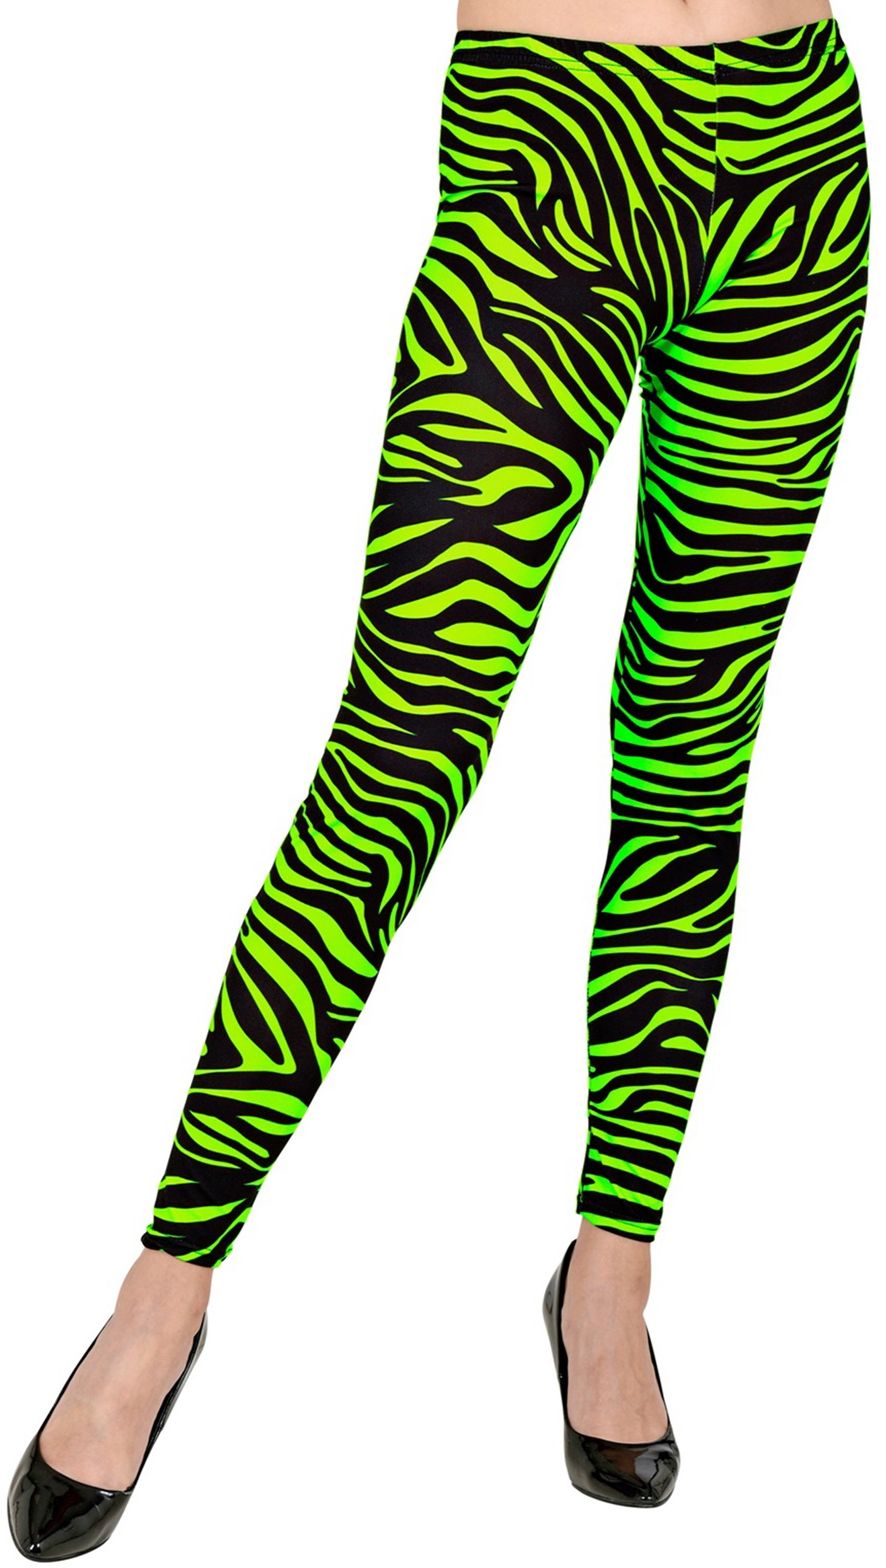 Groene zebra legging